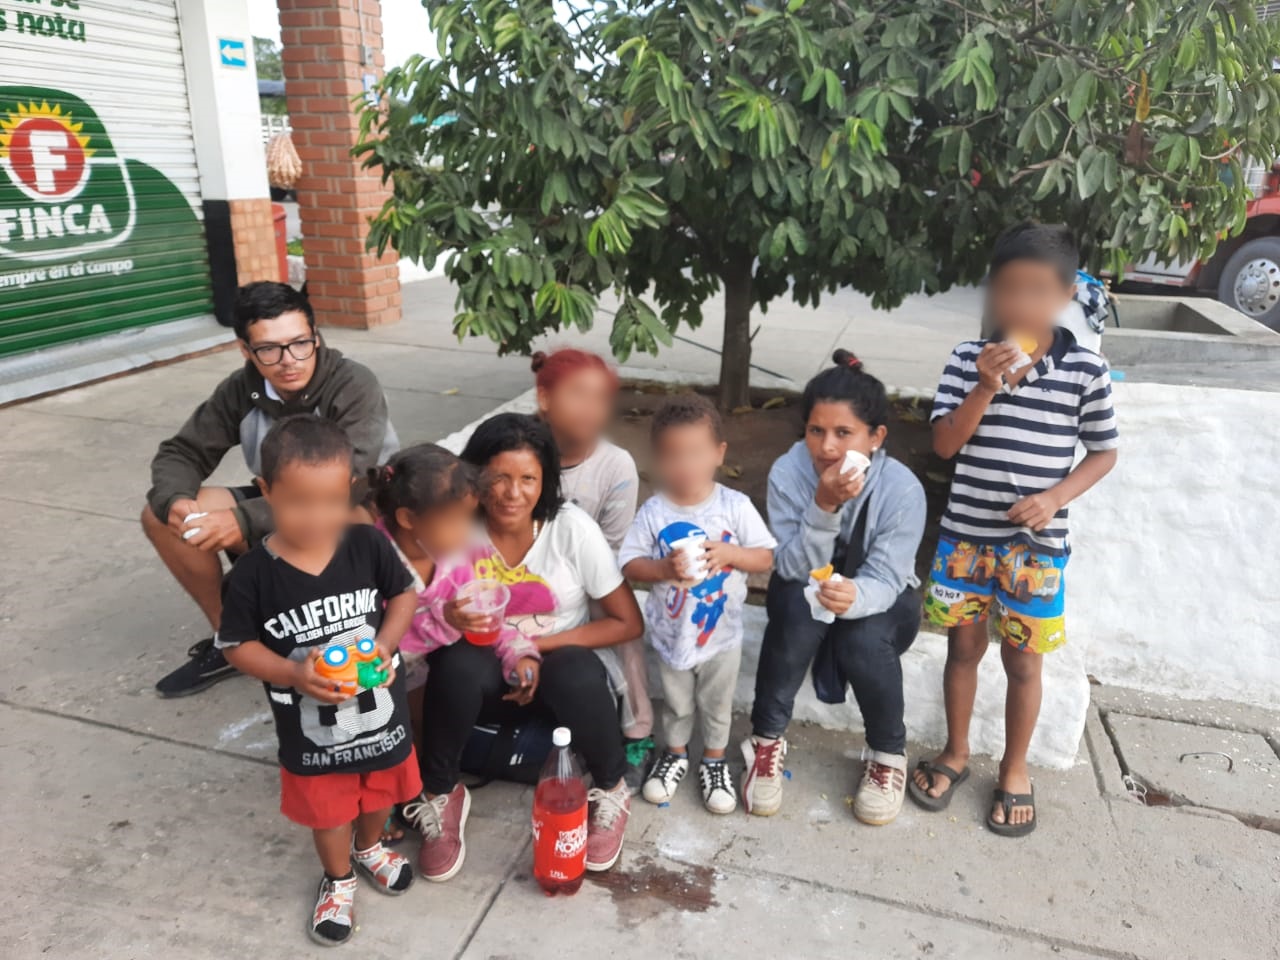 Servicio social: familia venezolana necesita llegar a Medellín, llevan mes y medio caminando